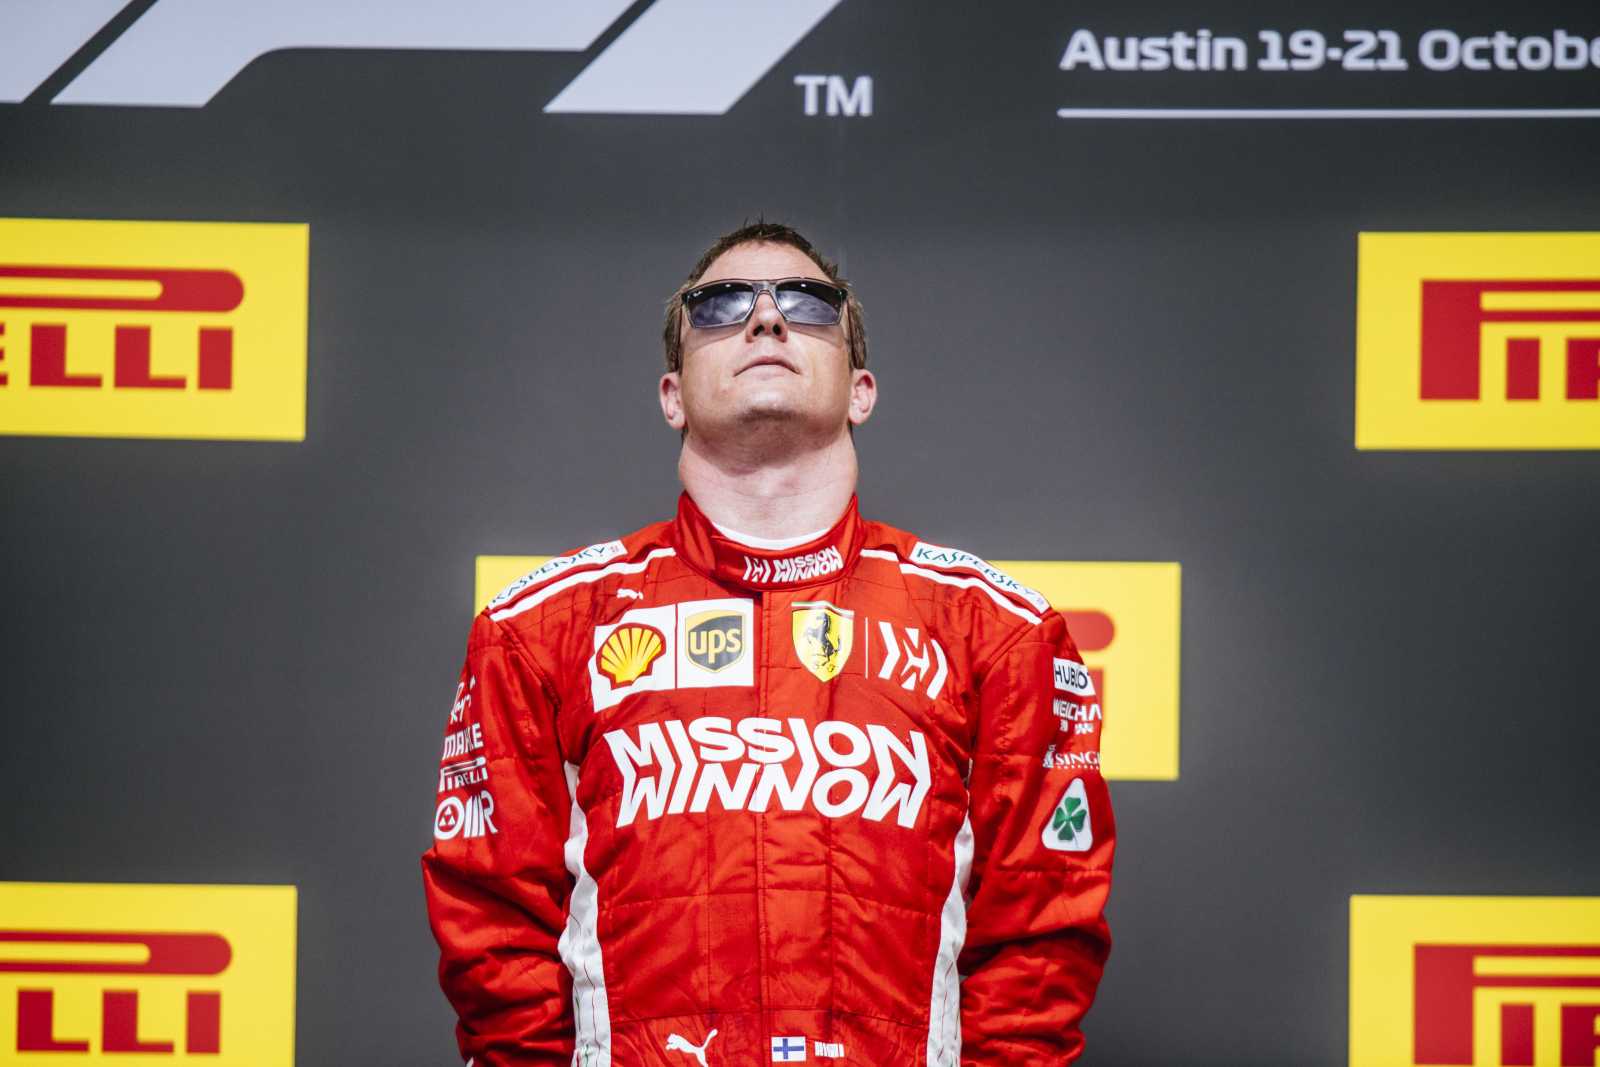 16º lugar: Kimi Räikkönen (FIN) - 21 vitórias.